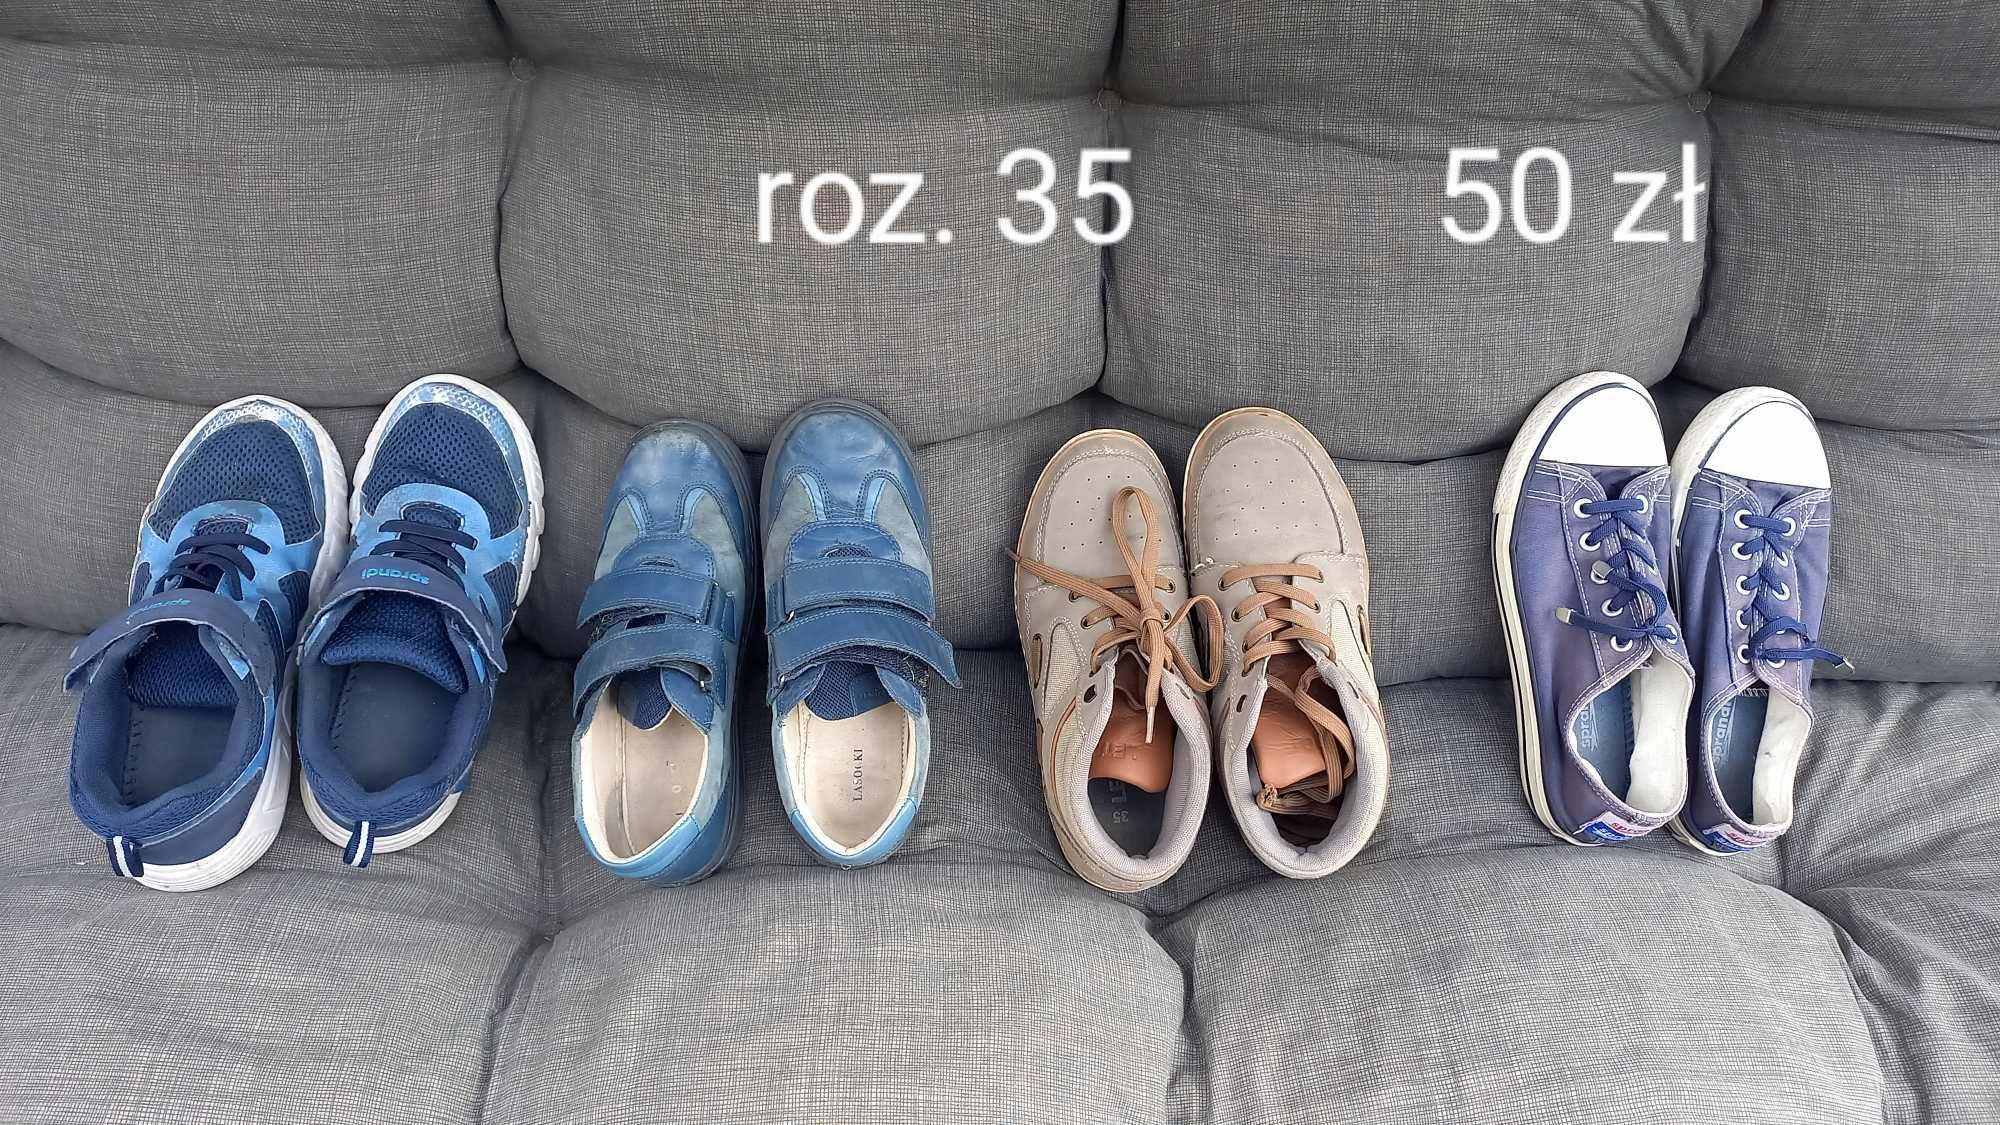 Buty chłopięce - różne rozmiary